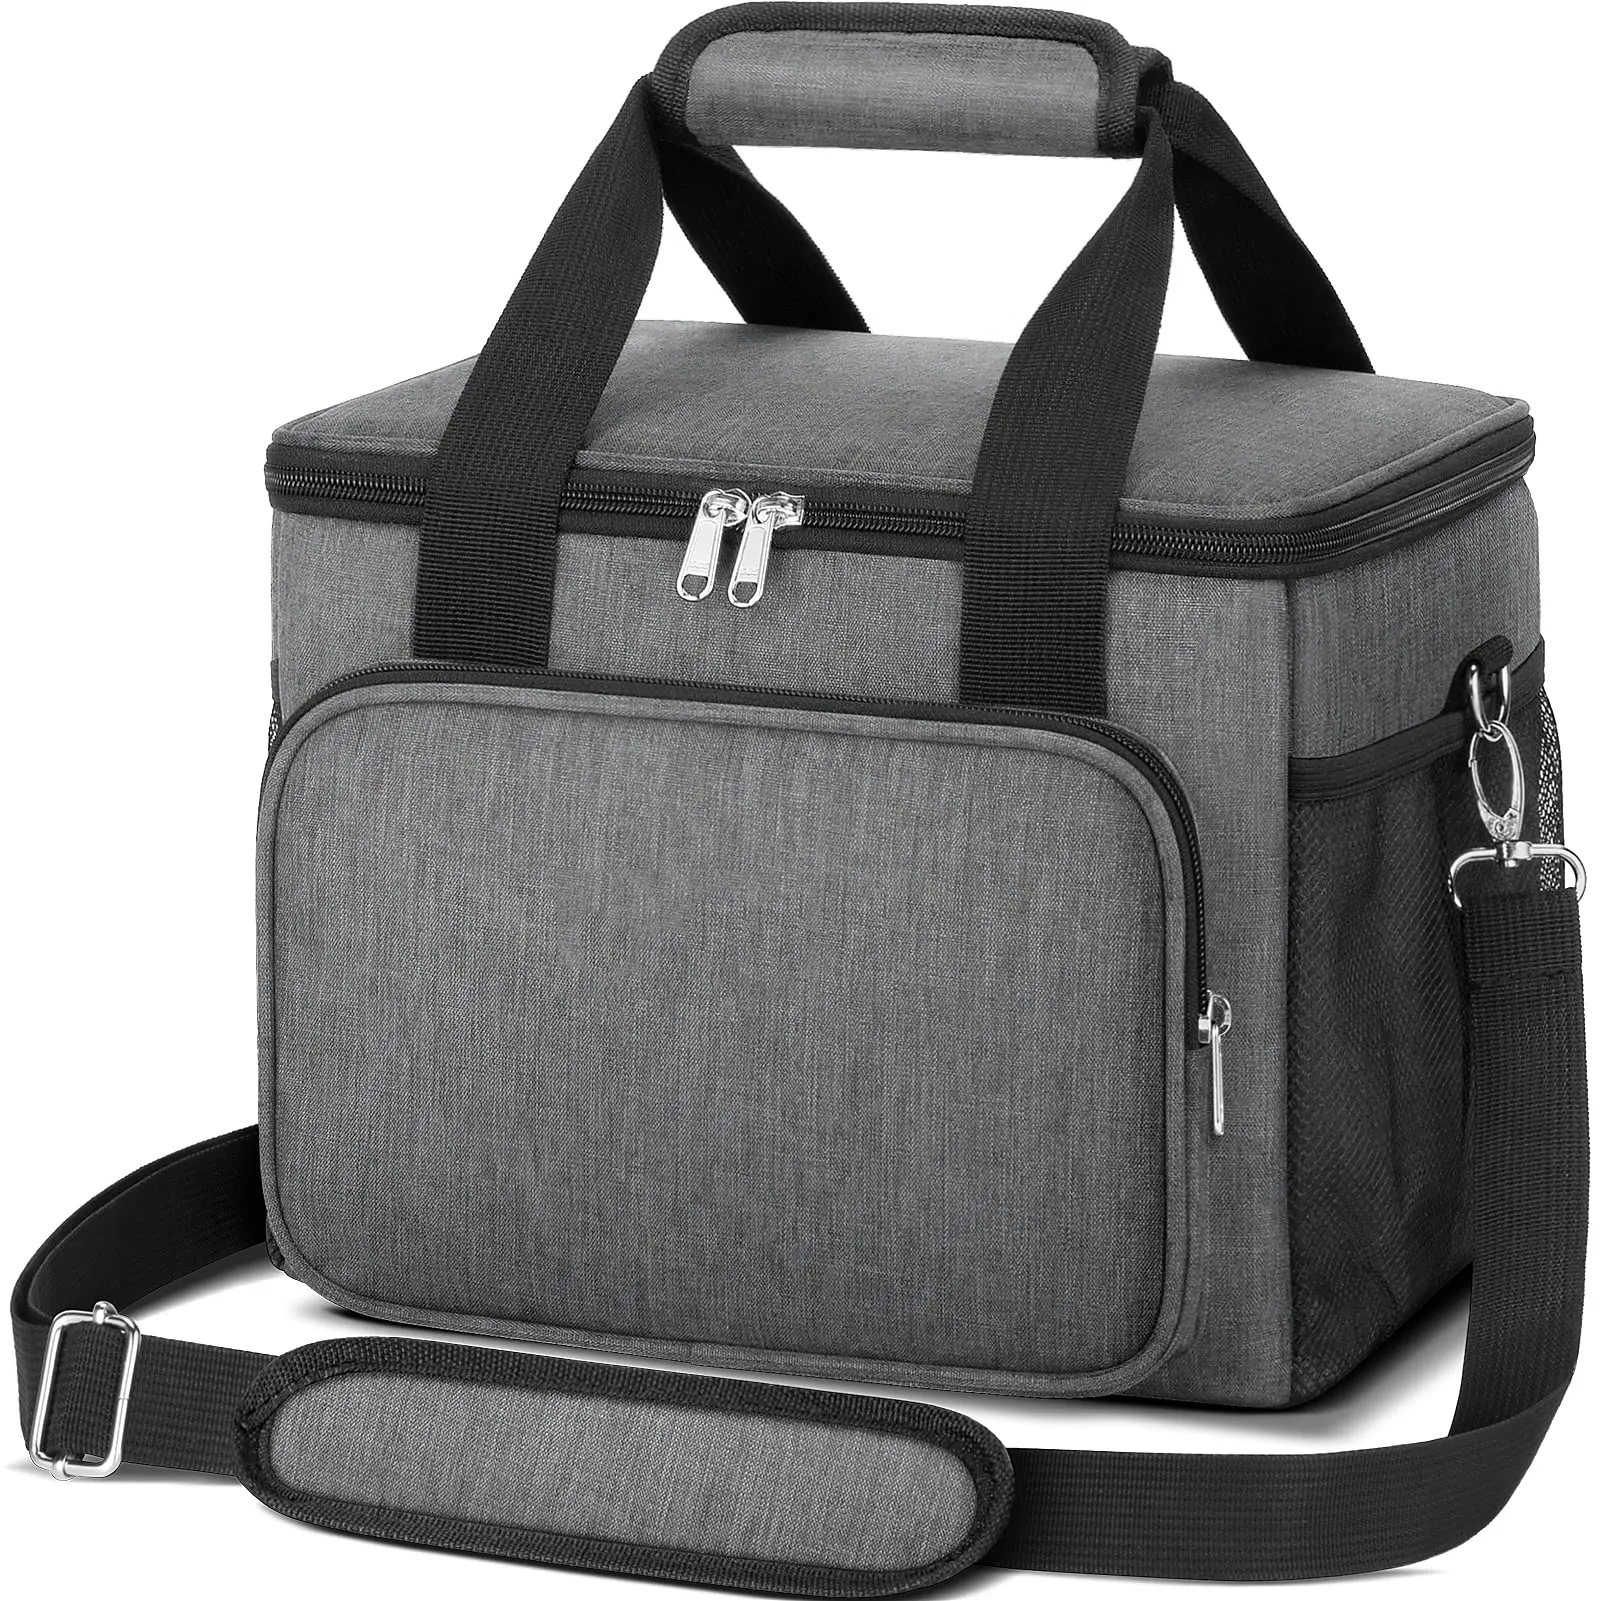 Сумка для обеда из полиэстера 300D с принтом на заказ, Портативная сумка на плечо для офиса, путешествий, пикника, пищевых продуктов, термоизолированная сумка-холодильник